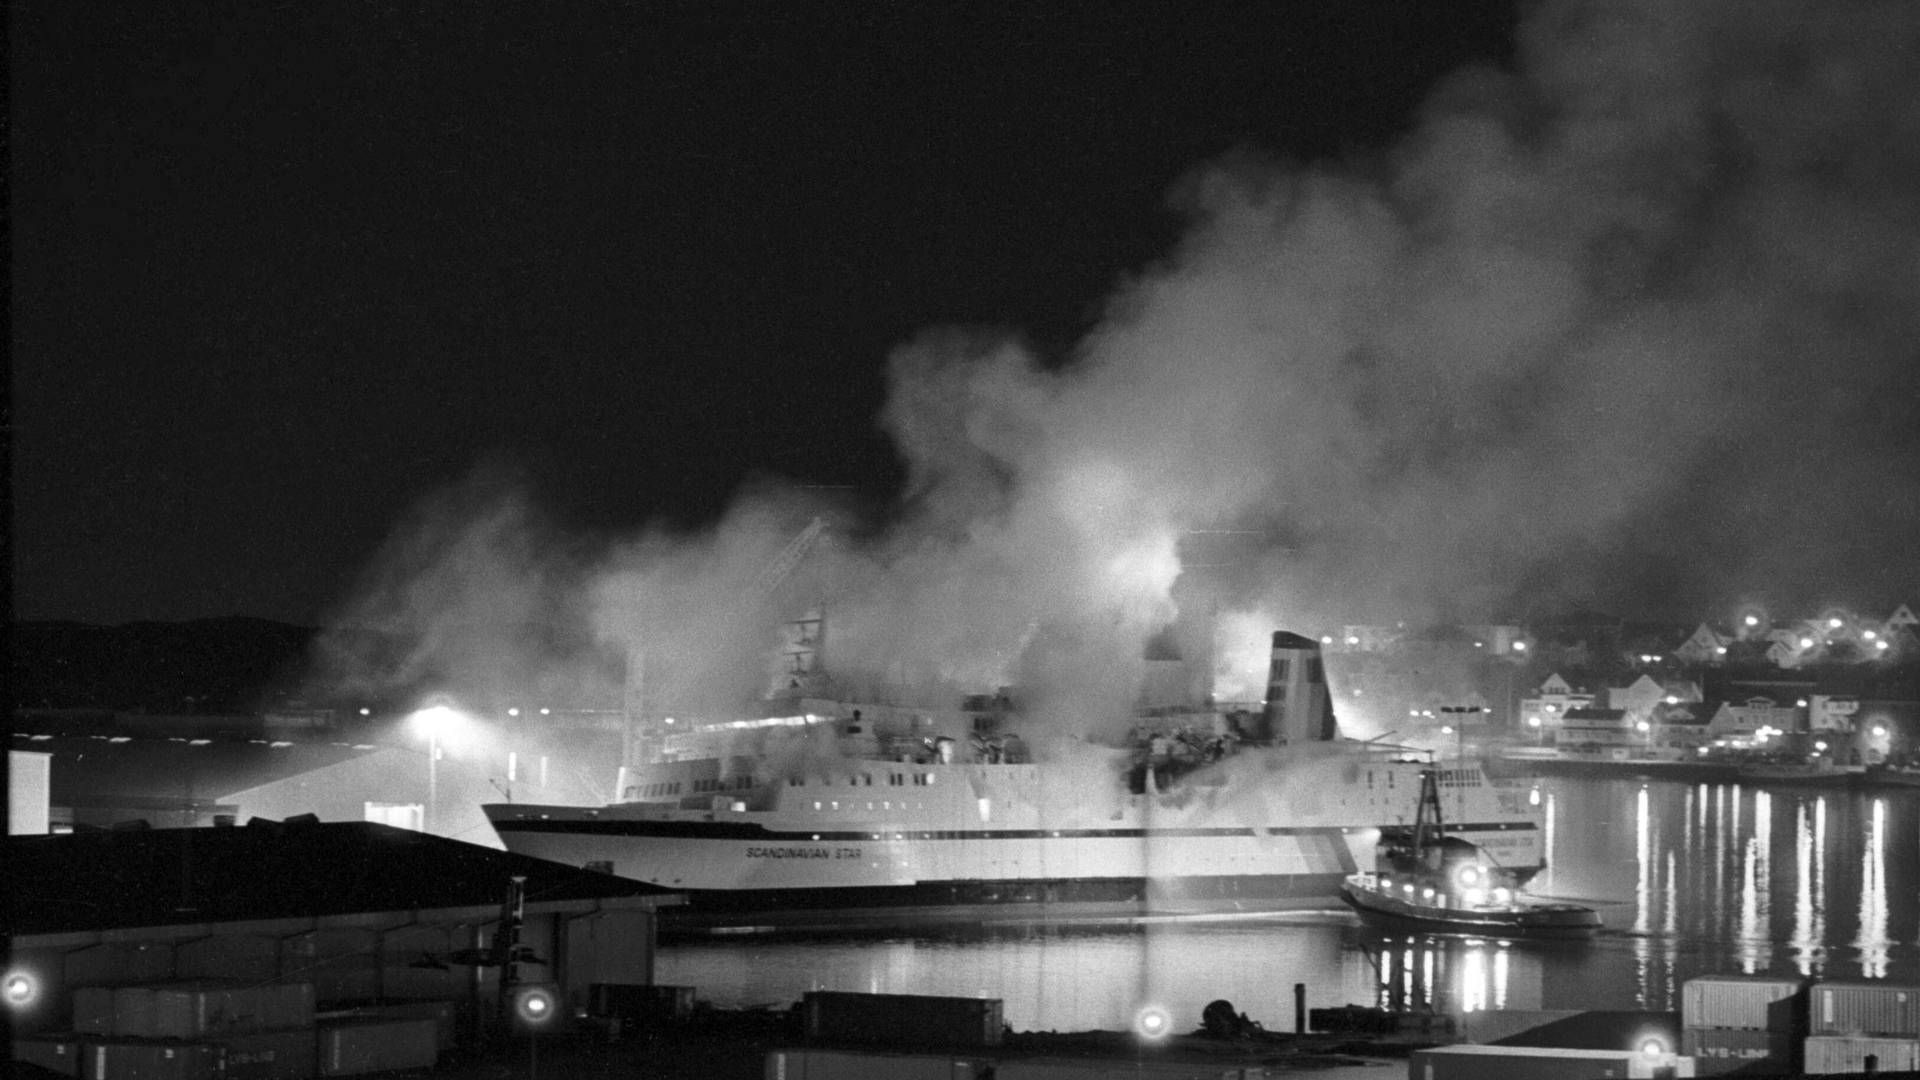 Den brændende færge Scandinavian Star er blevet slæbt ind til den svenske havn Lysekil dagen efter den første brand opstod og 159 mennesker omkom. | Foto: Jens Dige/Ritzau Scanpix